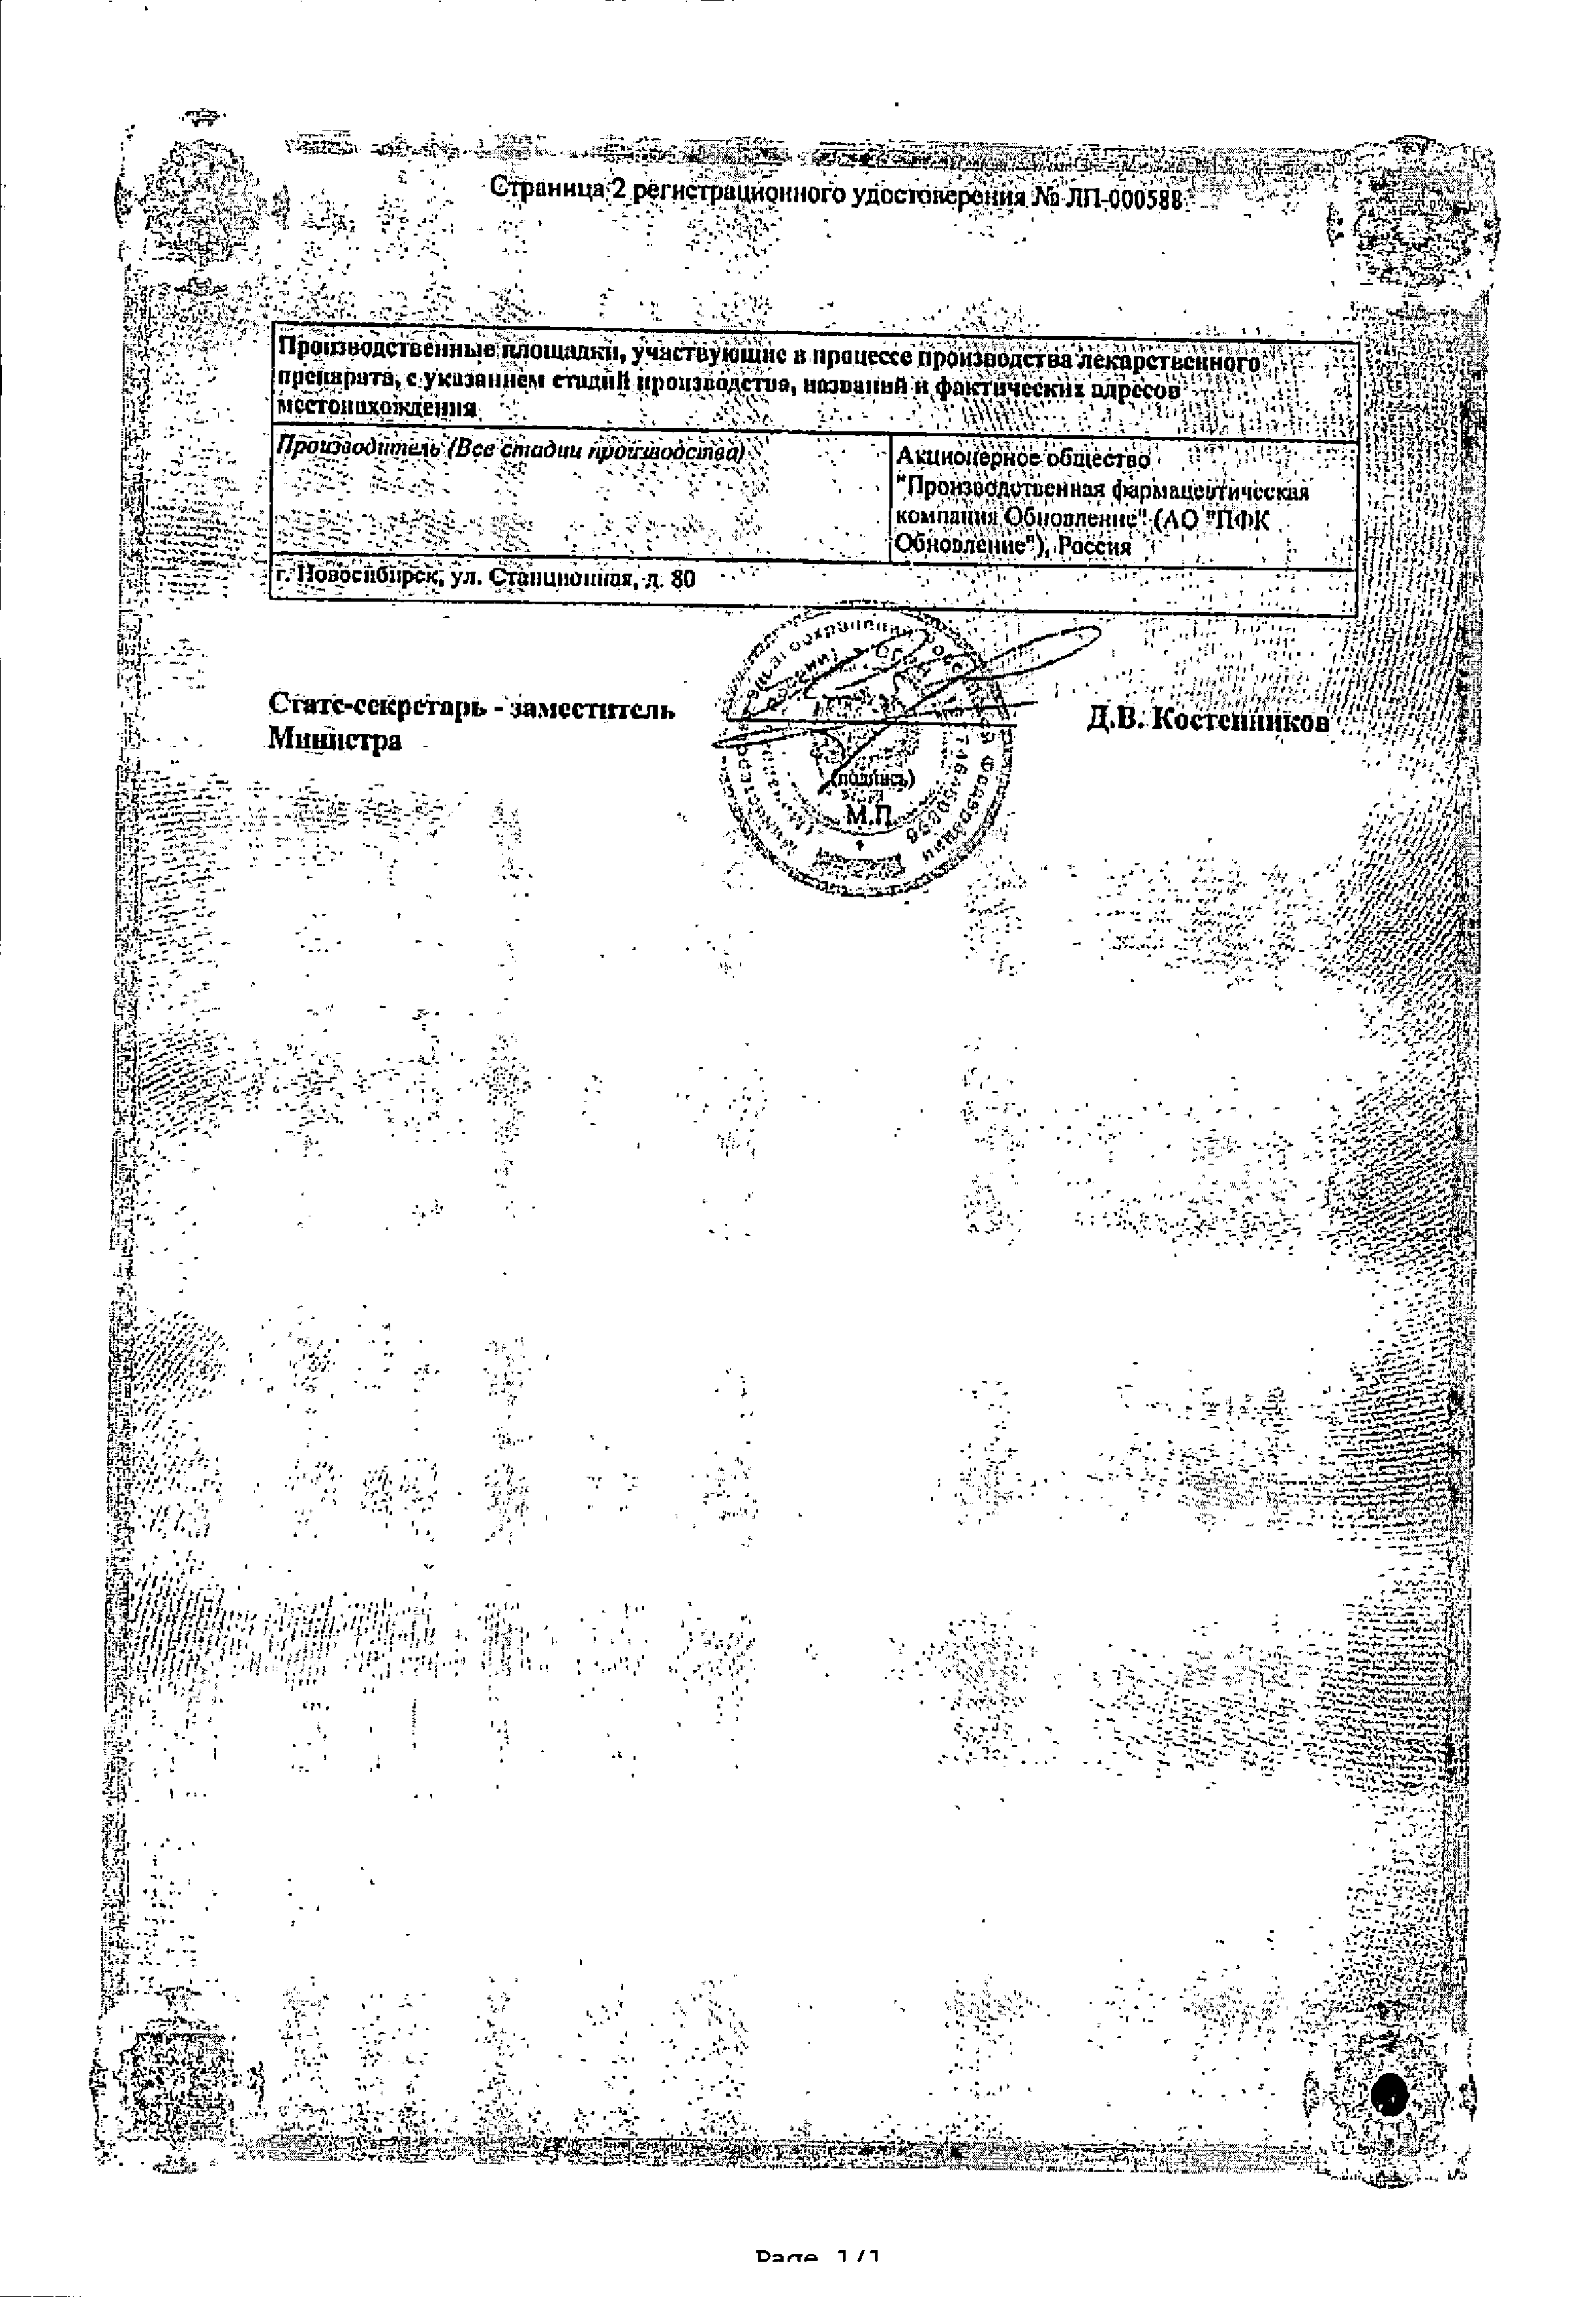 Калия йодид Реневал сертификат